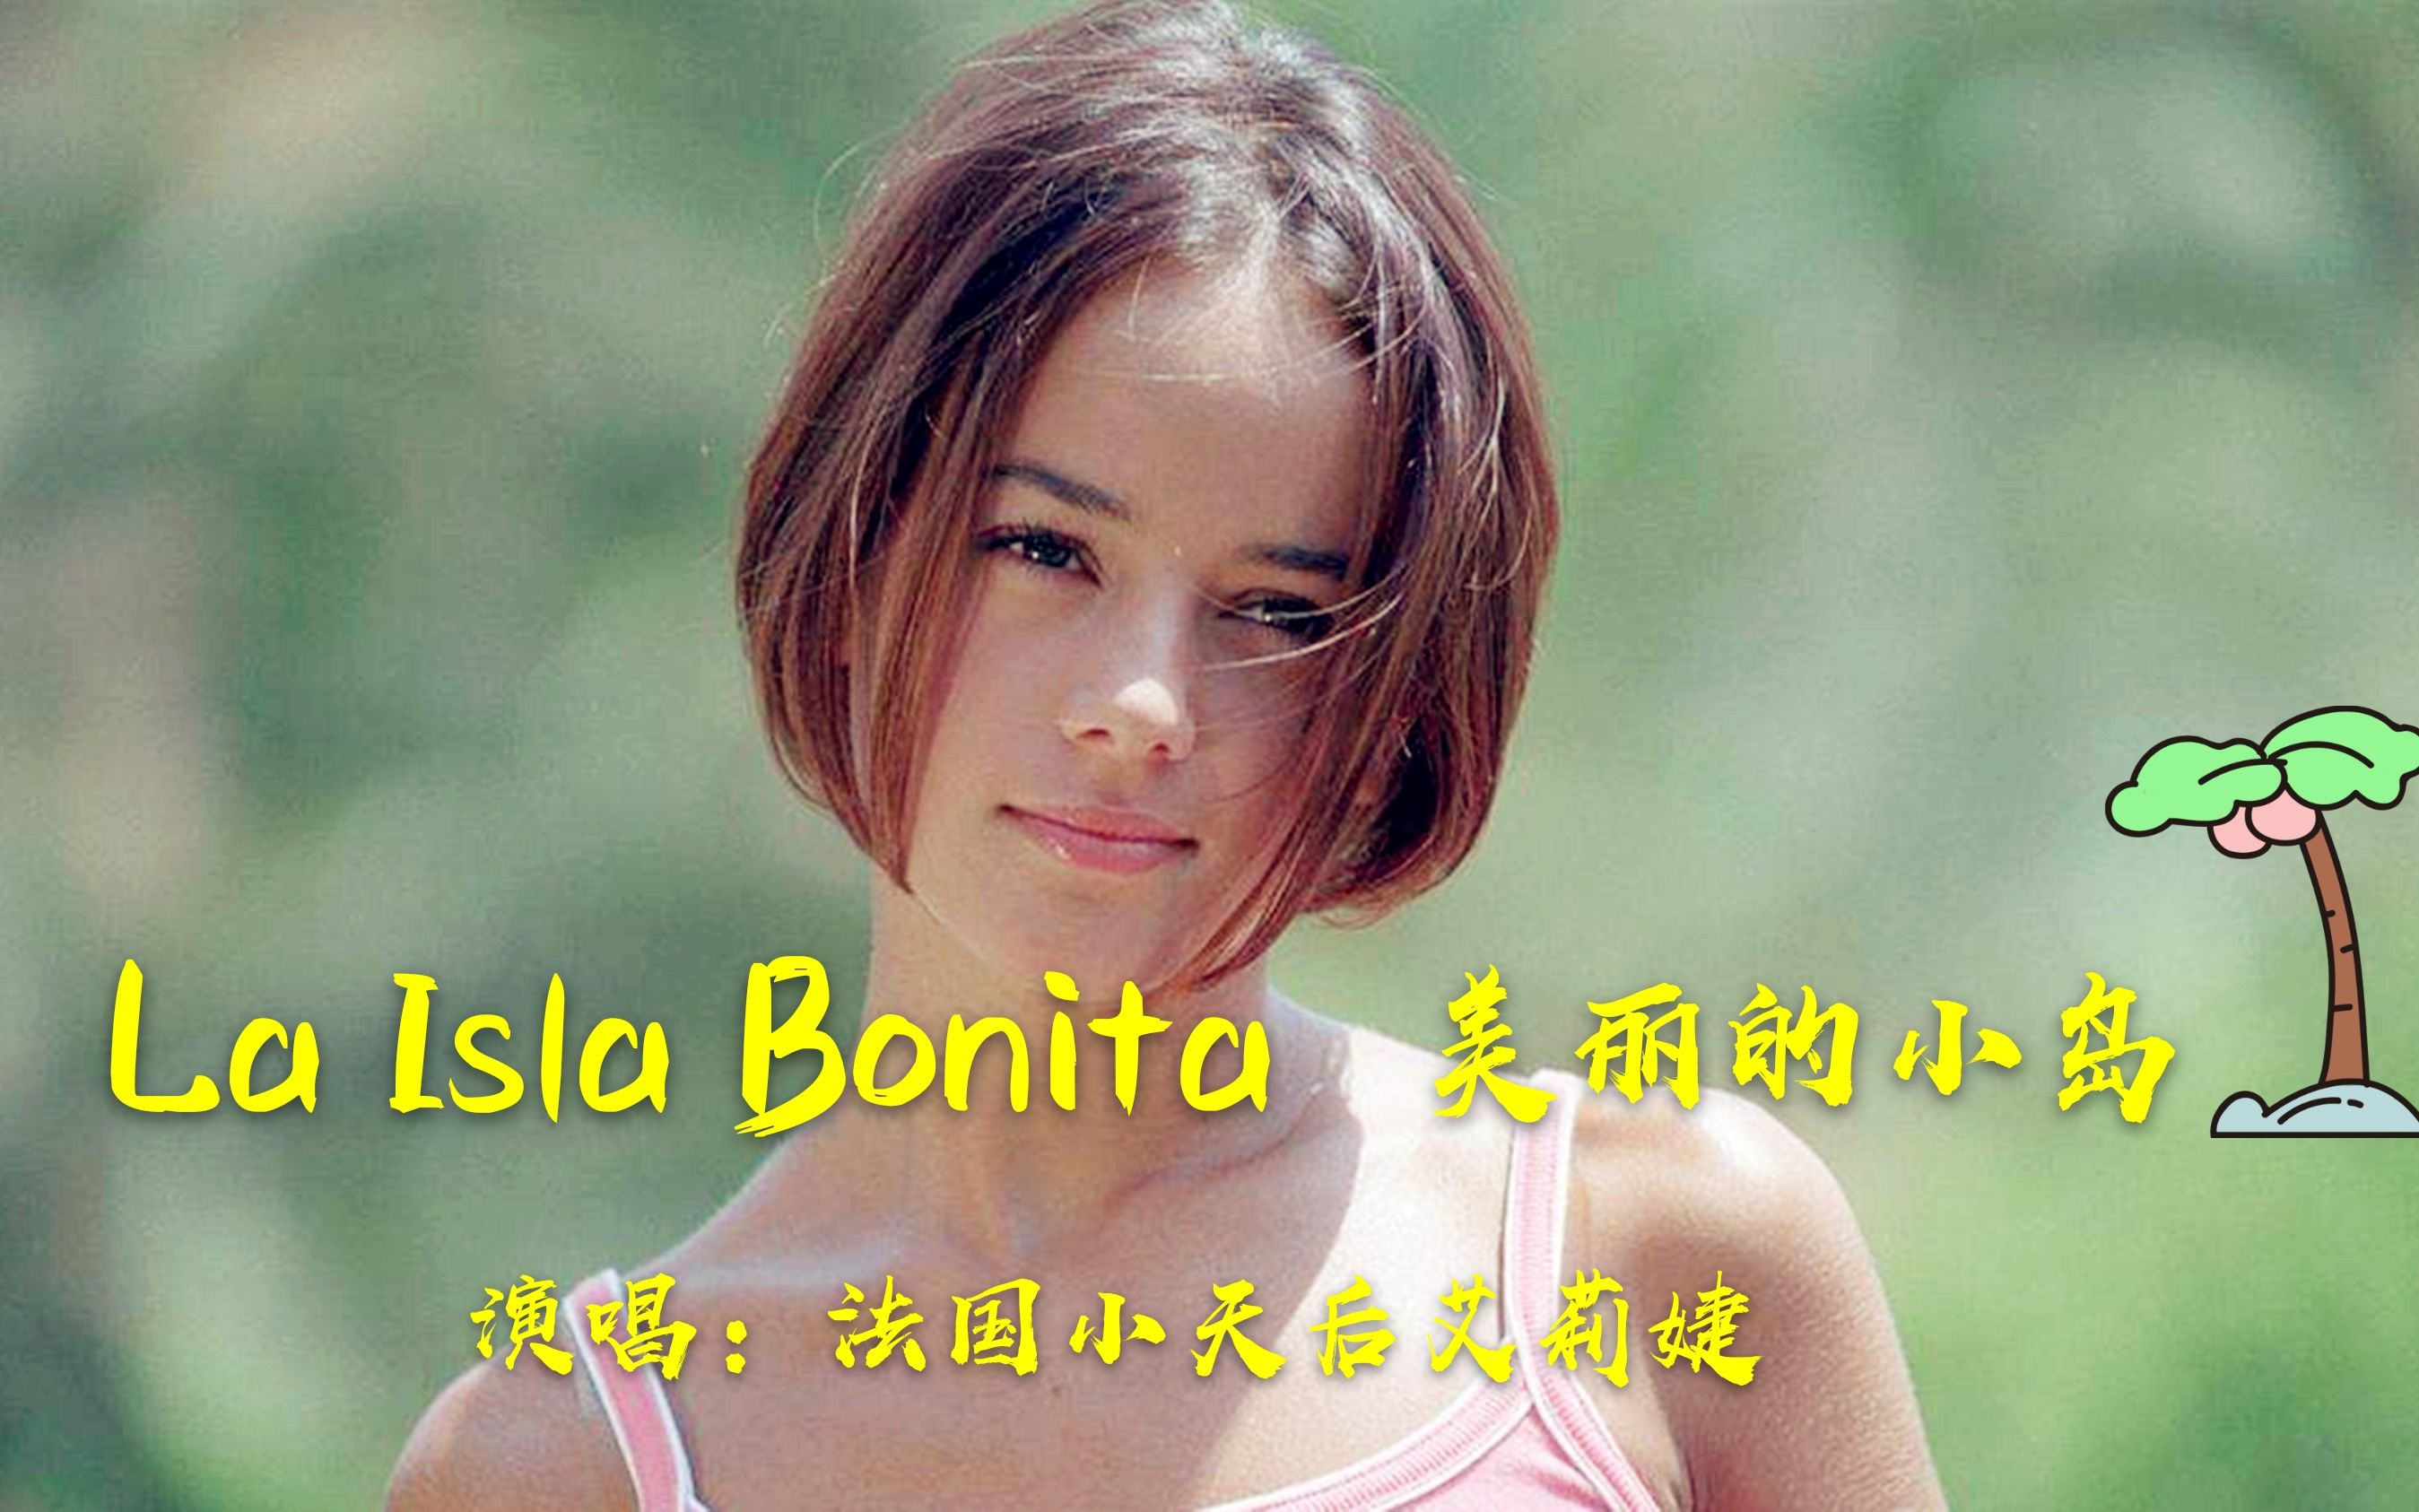 法国经典拉丁舞曲《La Isla Bonita》，小天后艾莉婕的翻唱，太撩人了吧